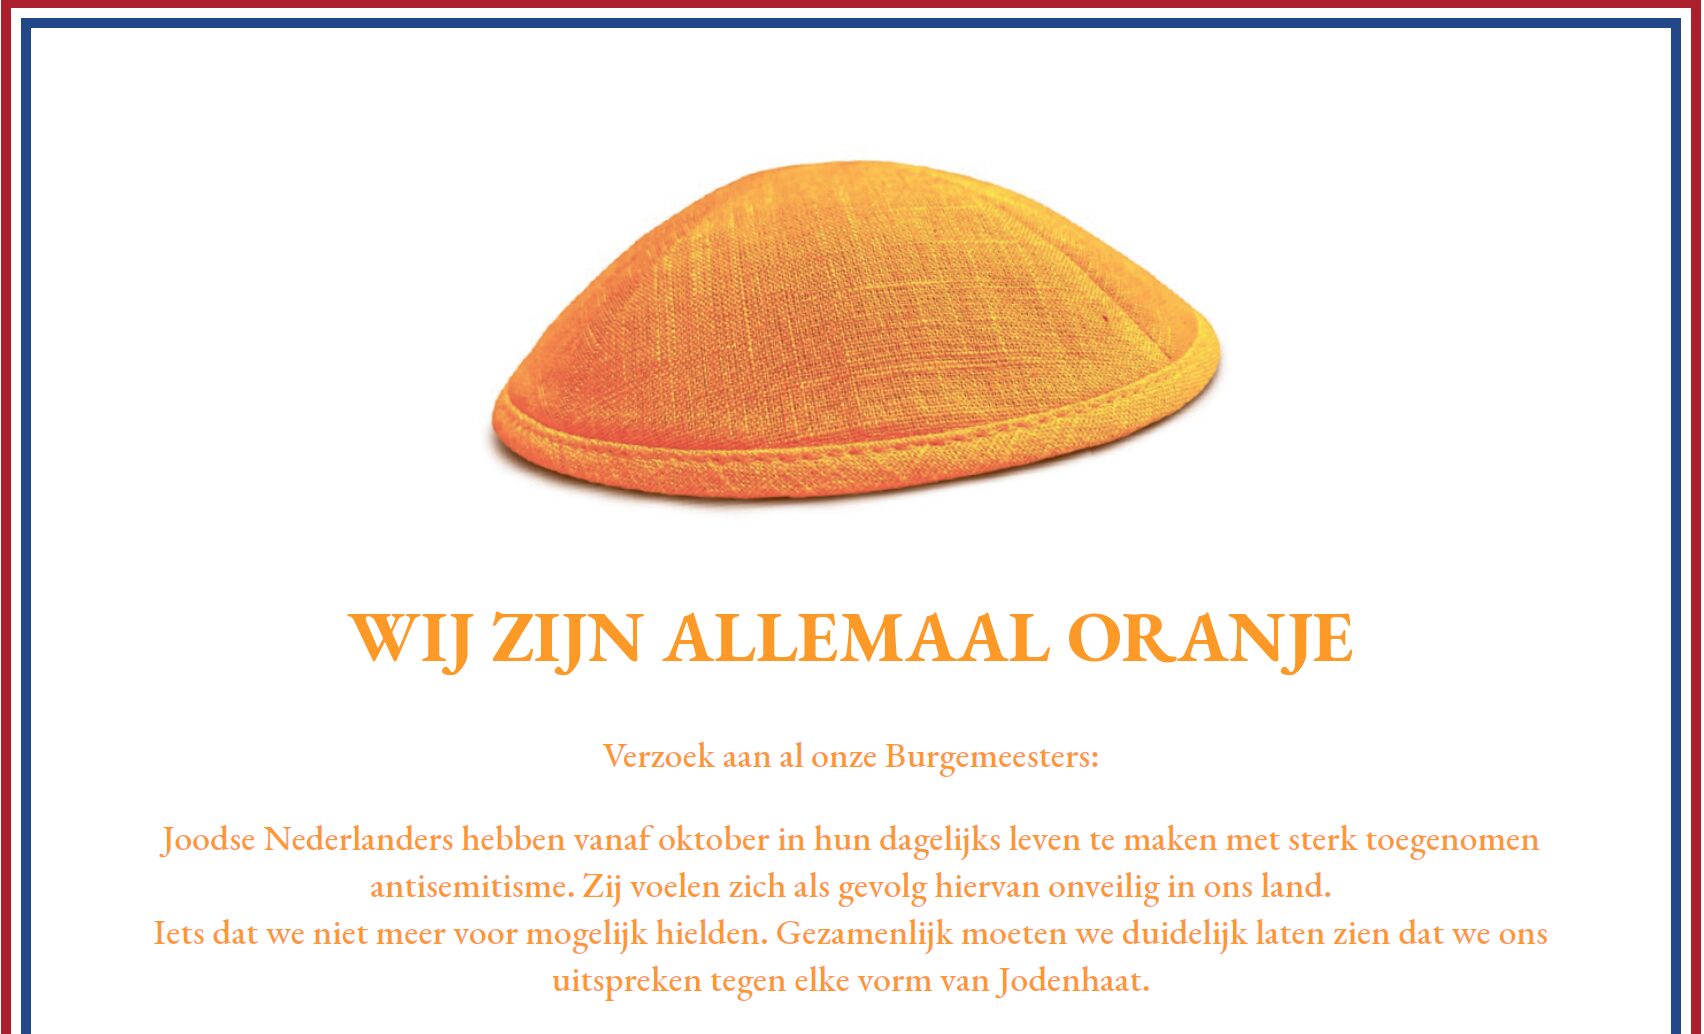 ‘Burgemeesters: draag oranje kippa op Koningsdag’